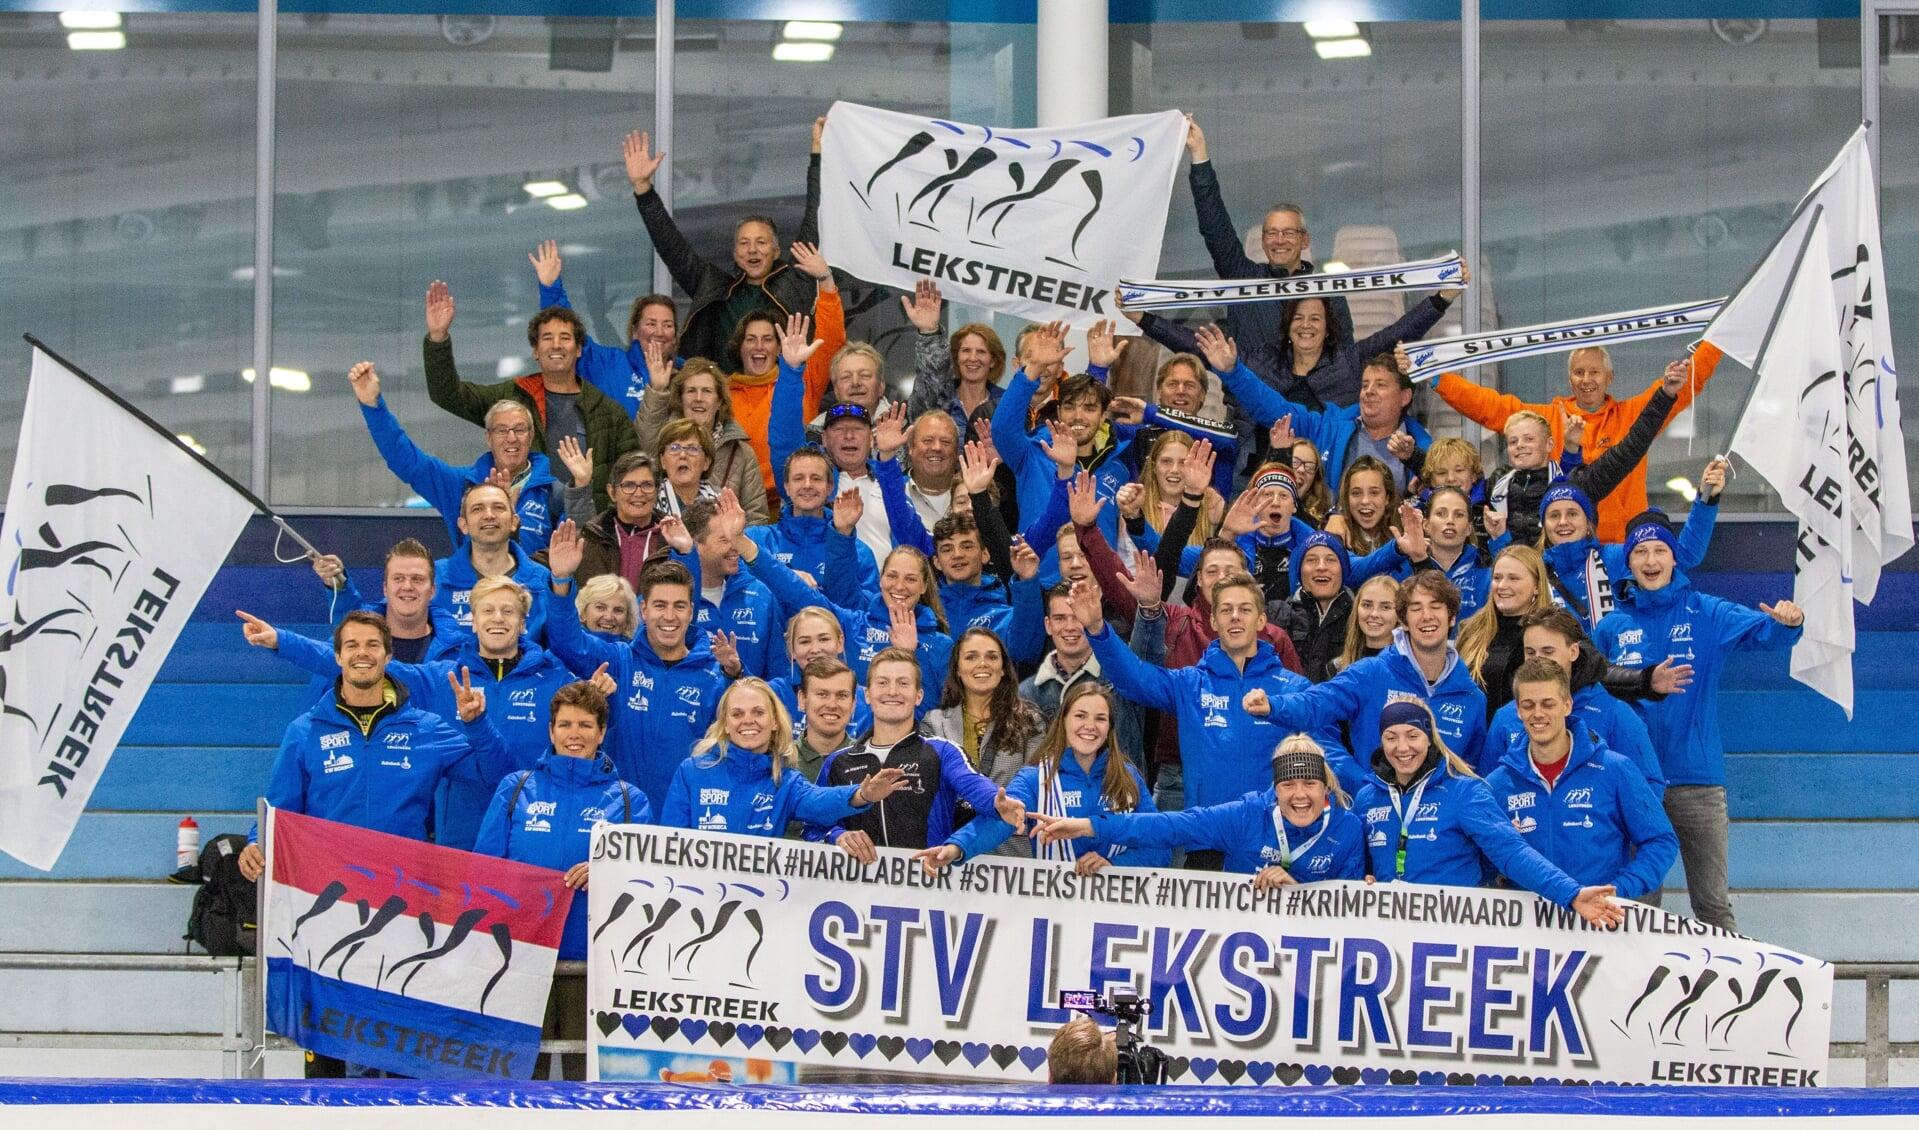 • De schaatsers van STV Lekstreek en hun meegereisde supporters.